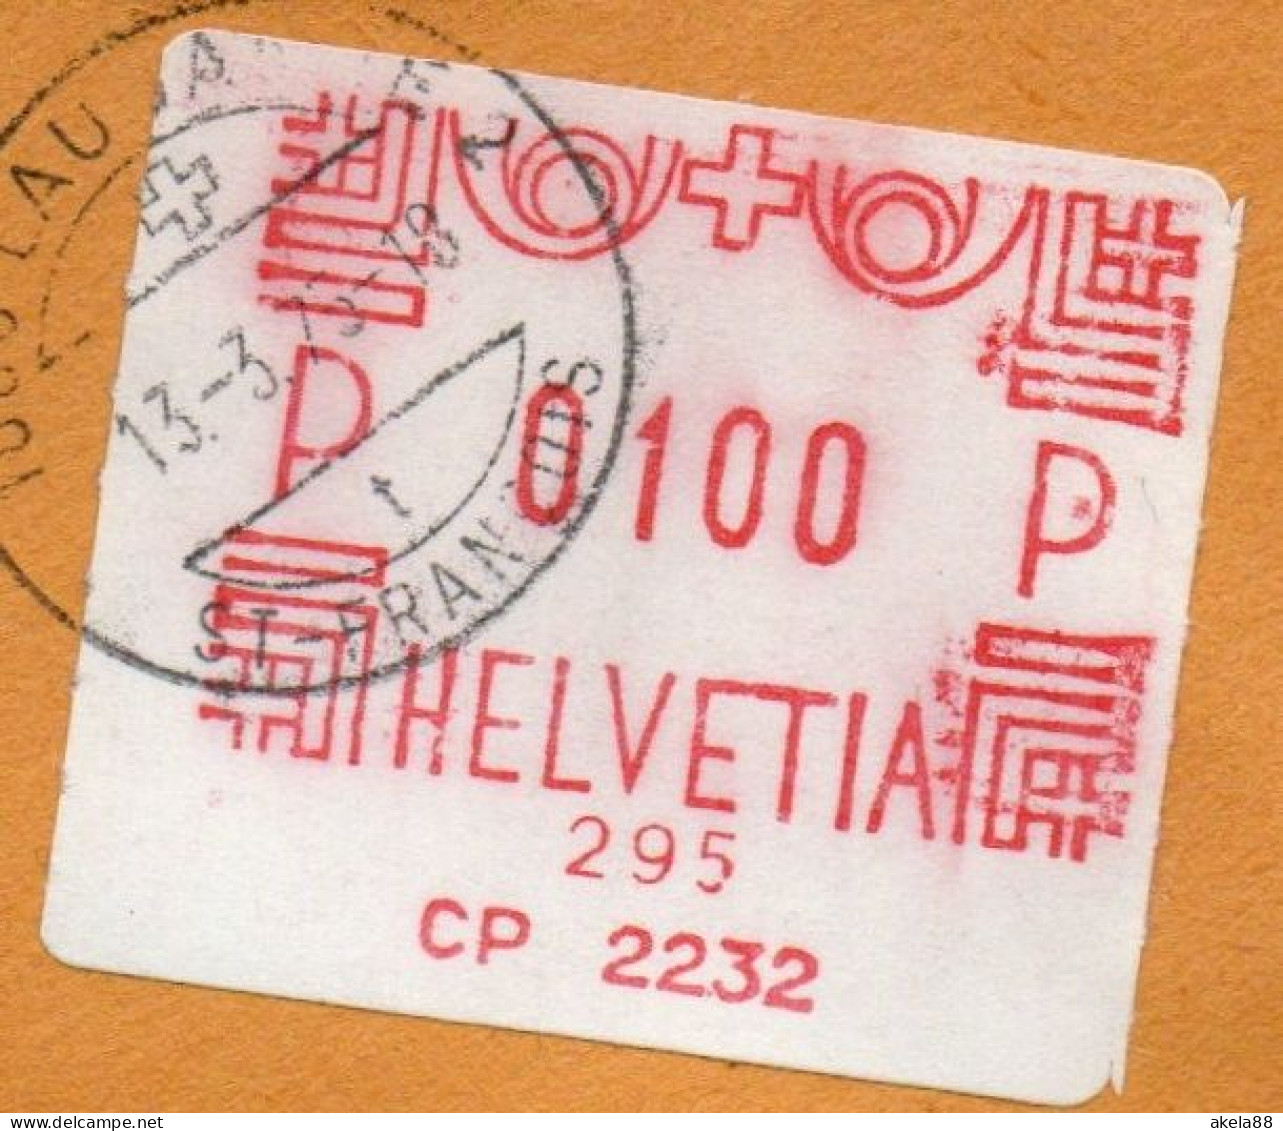 SVIZZERA  1976 - AFFRANCATURA ATM CP 2232 - LAUSANNE SAINT FRANCOIS - LAUSANNE CP 2232 - Postage Meters